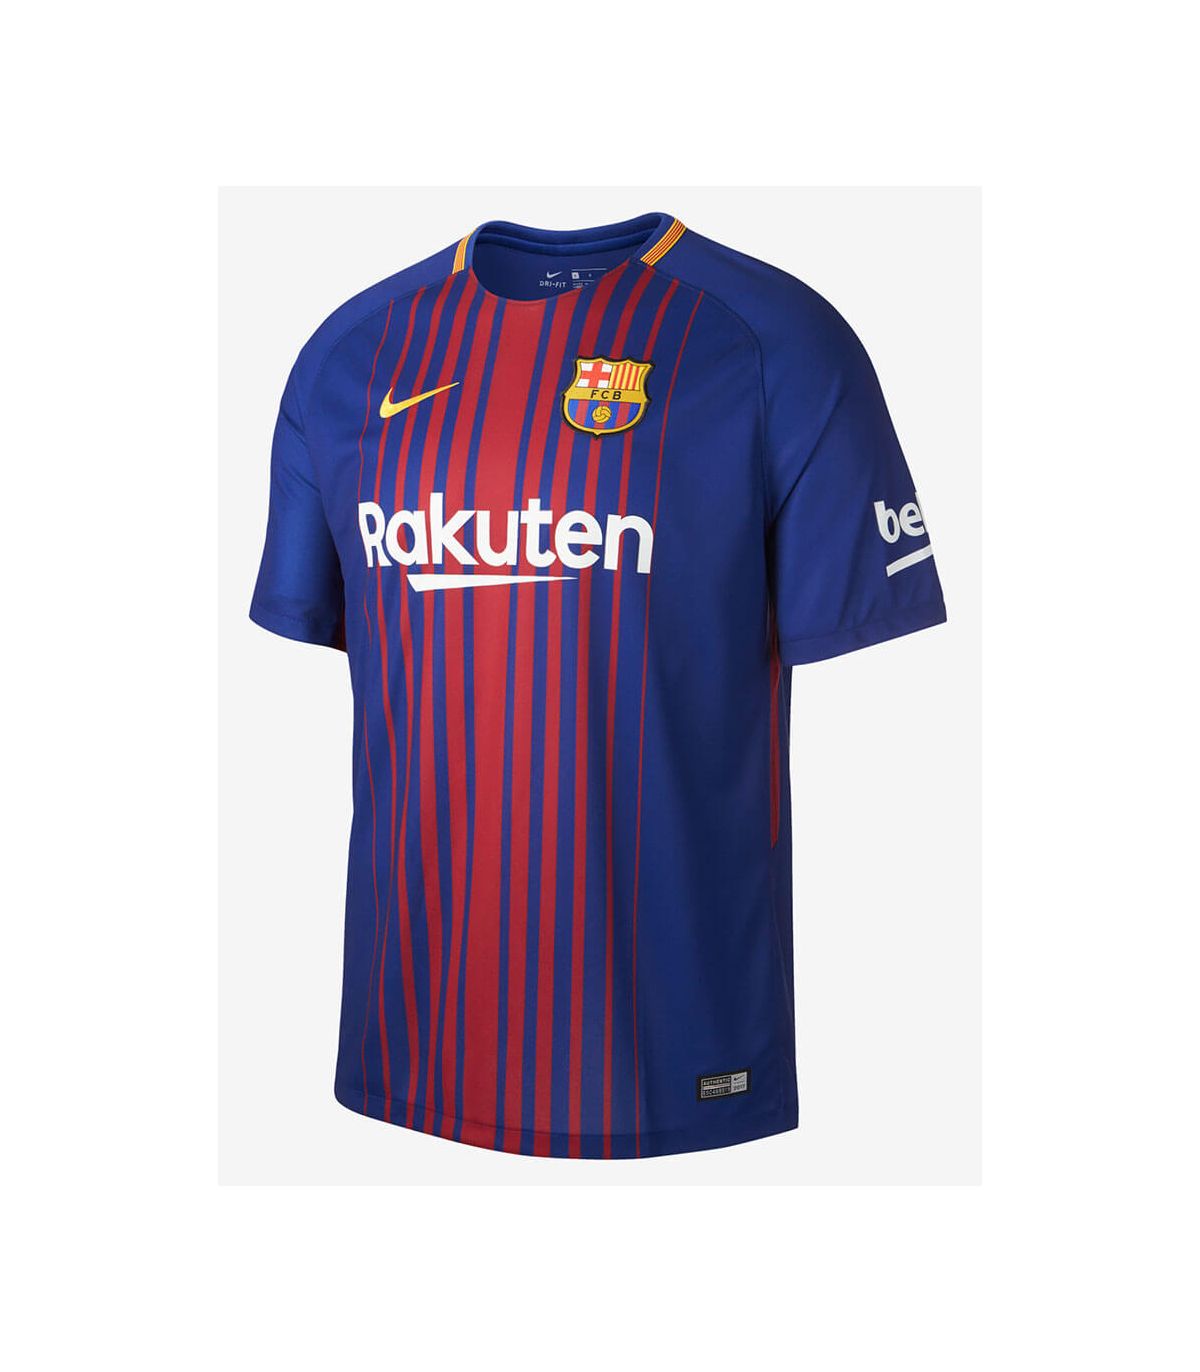 Nike camiseta de fútbol 2017/18 FC Barcelona Home Youth. Todo-Deporte.com